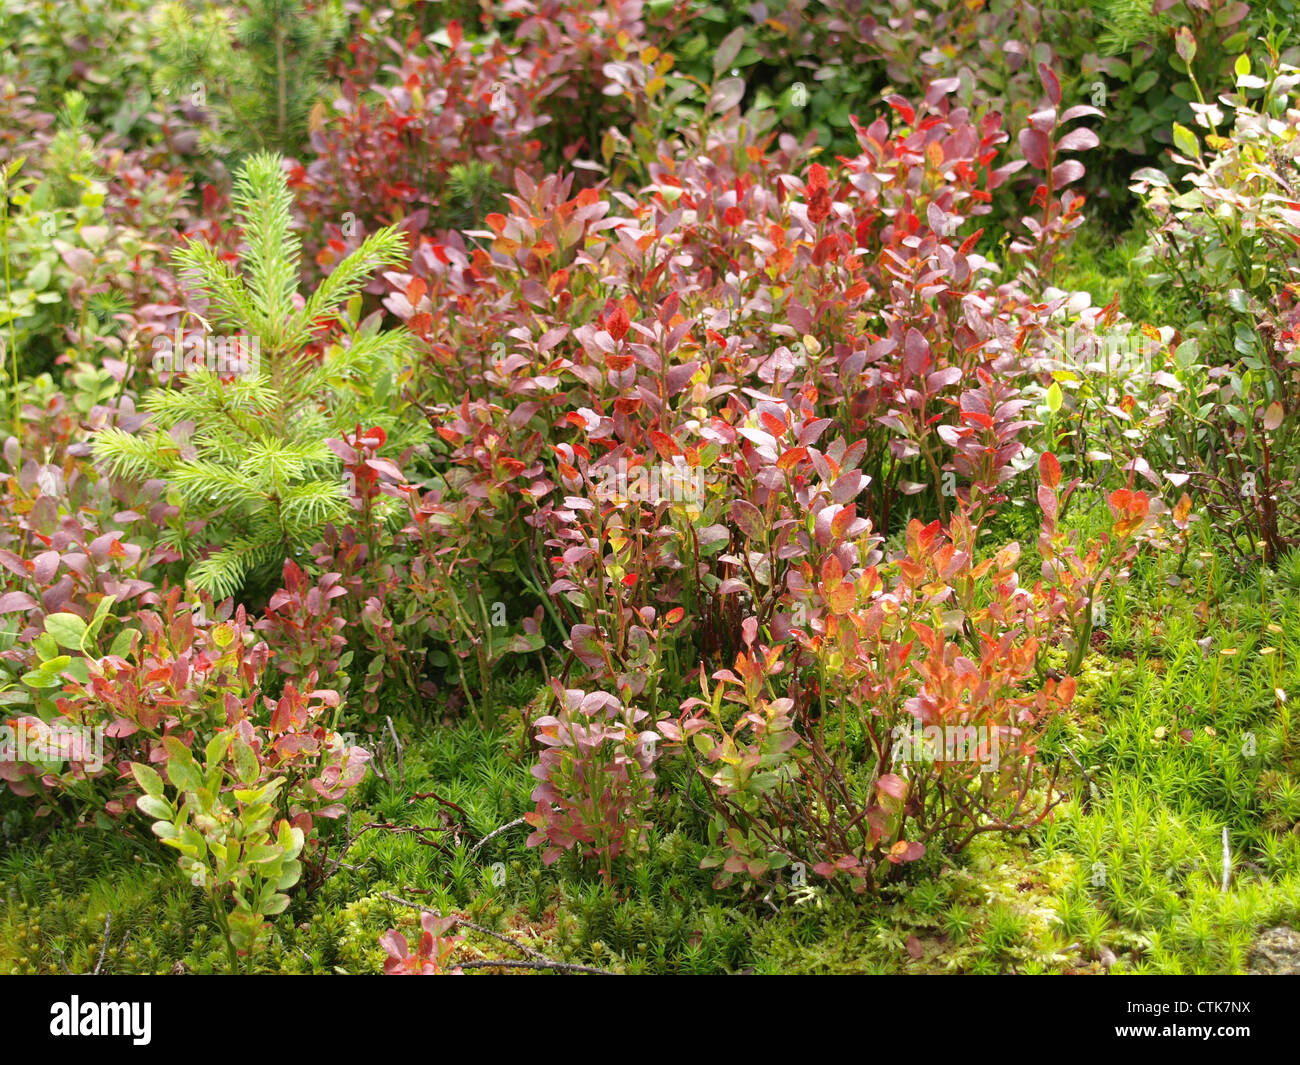 Suelo de madera en colores de otoño / Vaccinium myrtillus / Waldboden en Herbstfärbung Foto de stock